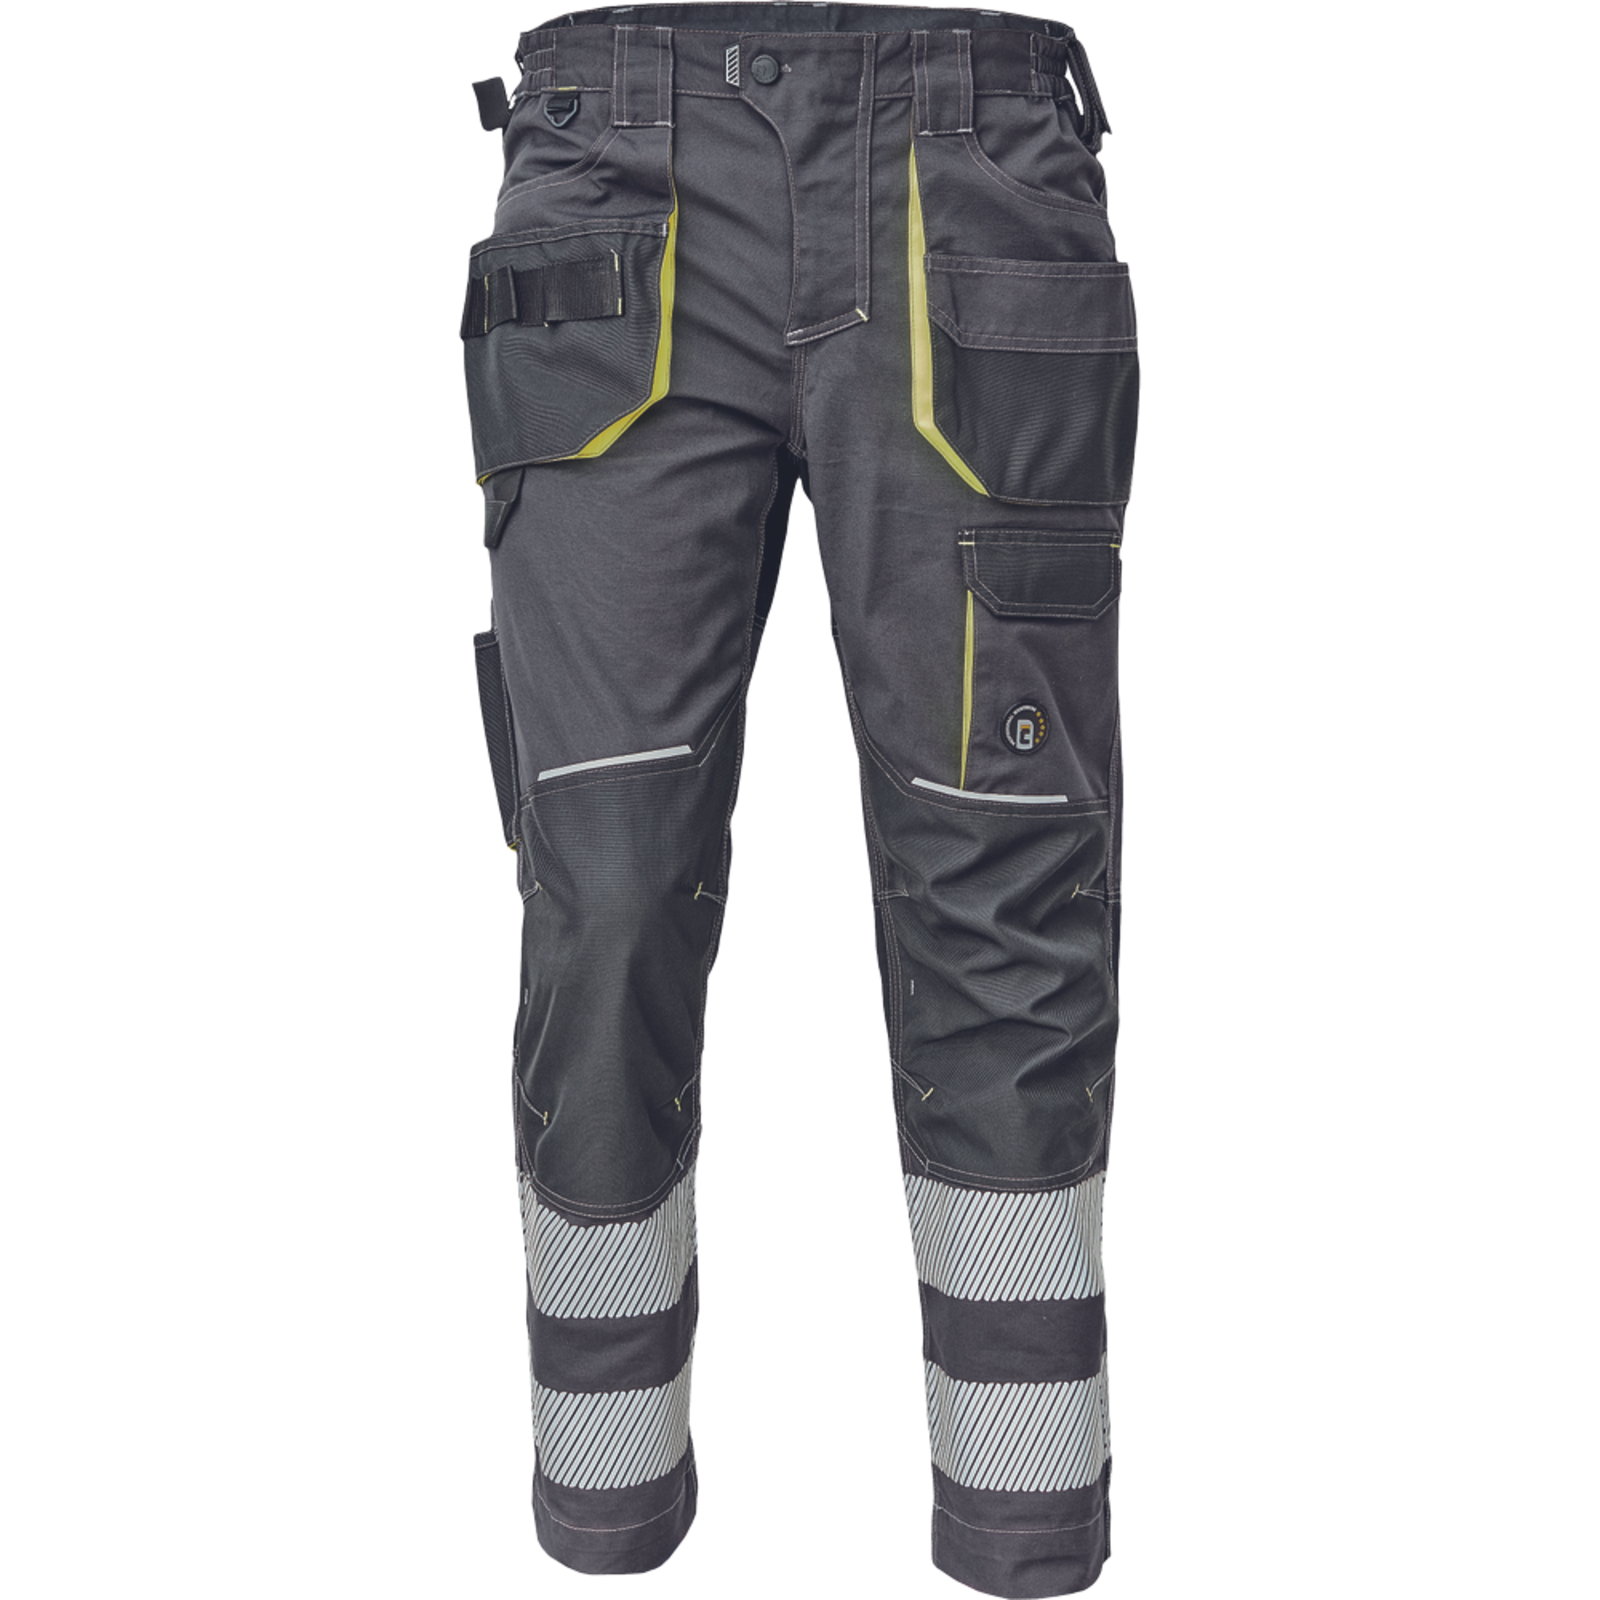 Pracovné nohavice s reflexnými pruhmi Cerva Sheldon RFLX pánske - veľkosť: 42, farba: antracit/žltá